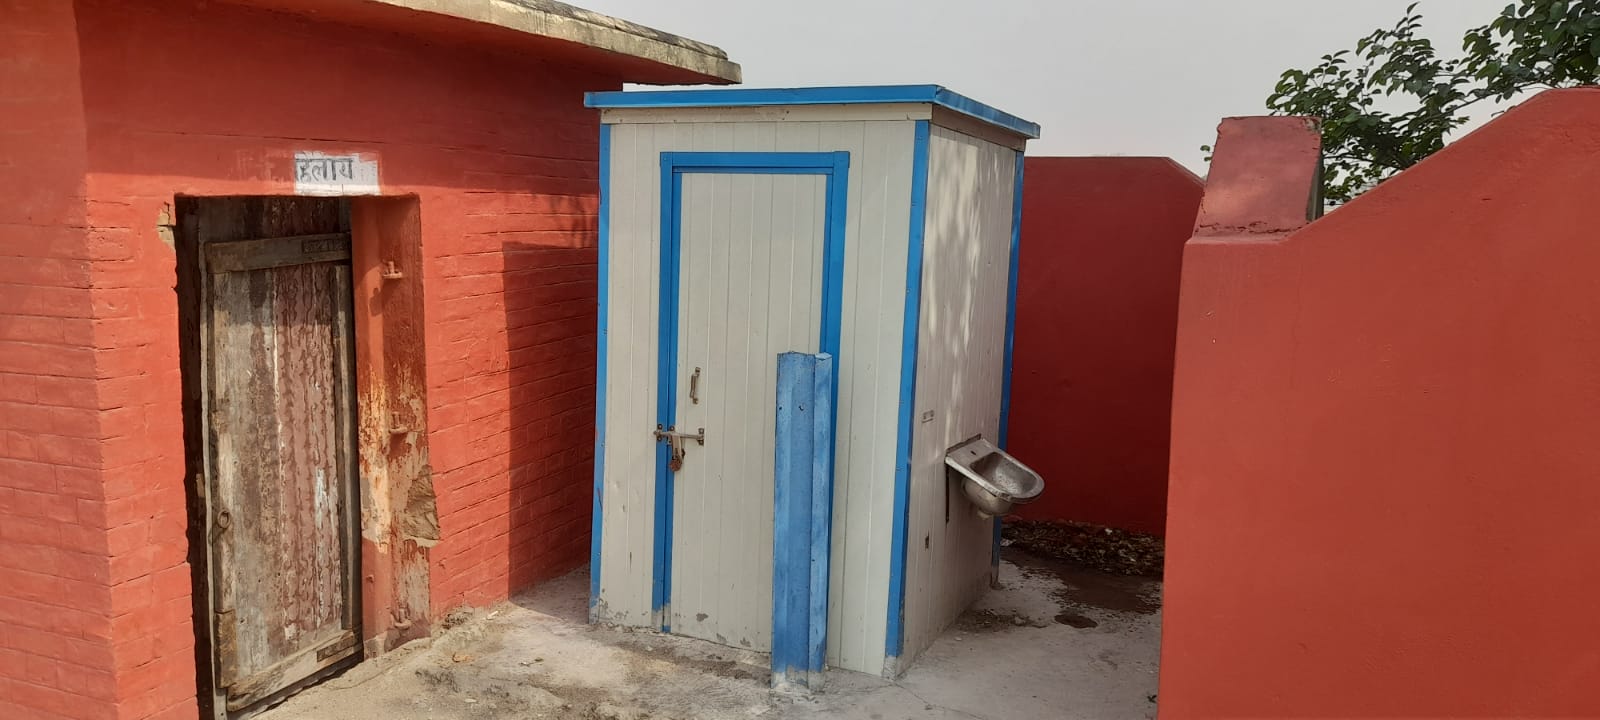 धीना रेलवे स्टेशन के शौचालय पे महीनों से लटक रहा ताला,यात्रियों को हो रही असुविधा